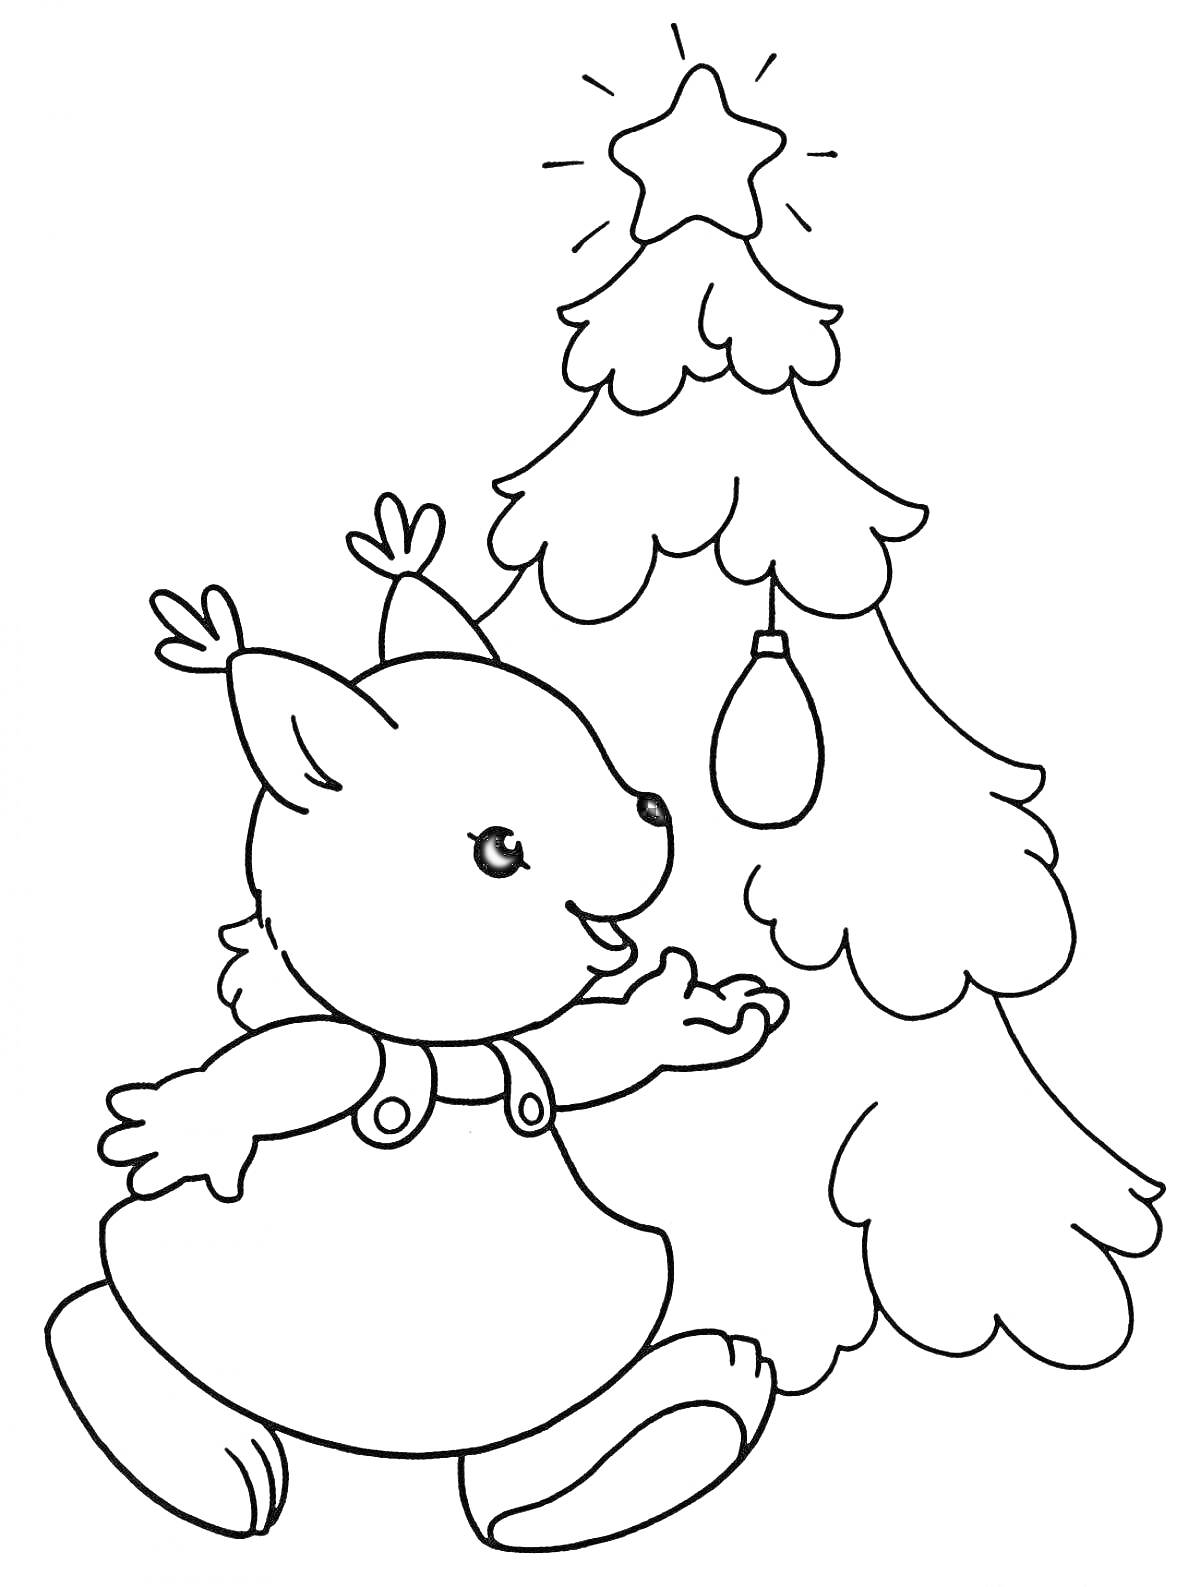 Раскраска Енот возле новогодней ёлки с украшениями и звездой наверху